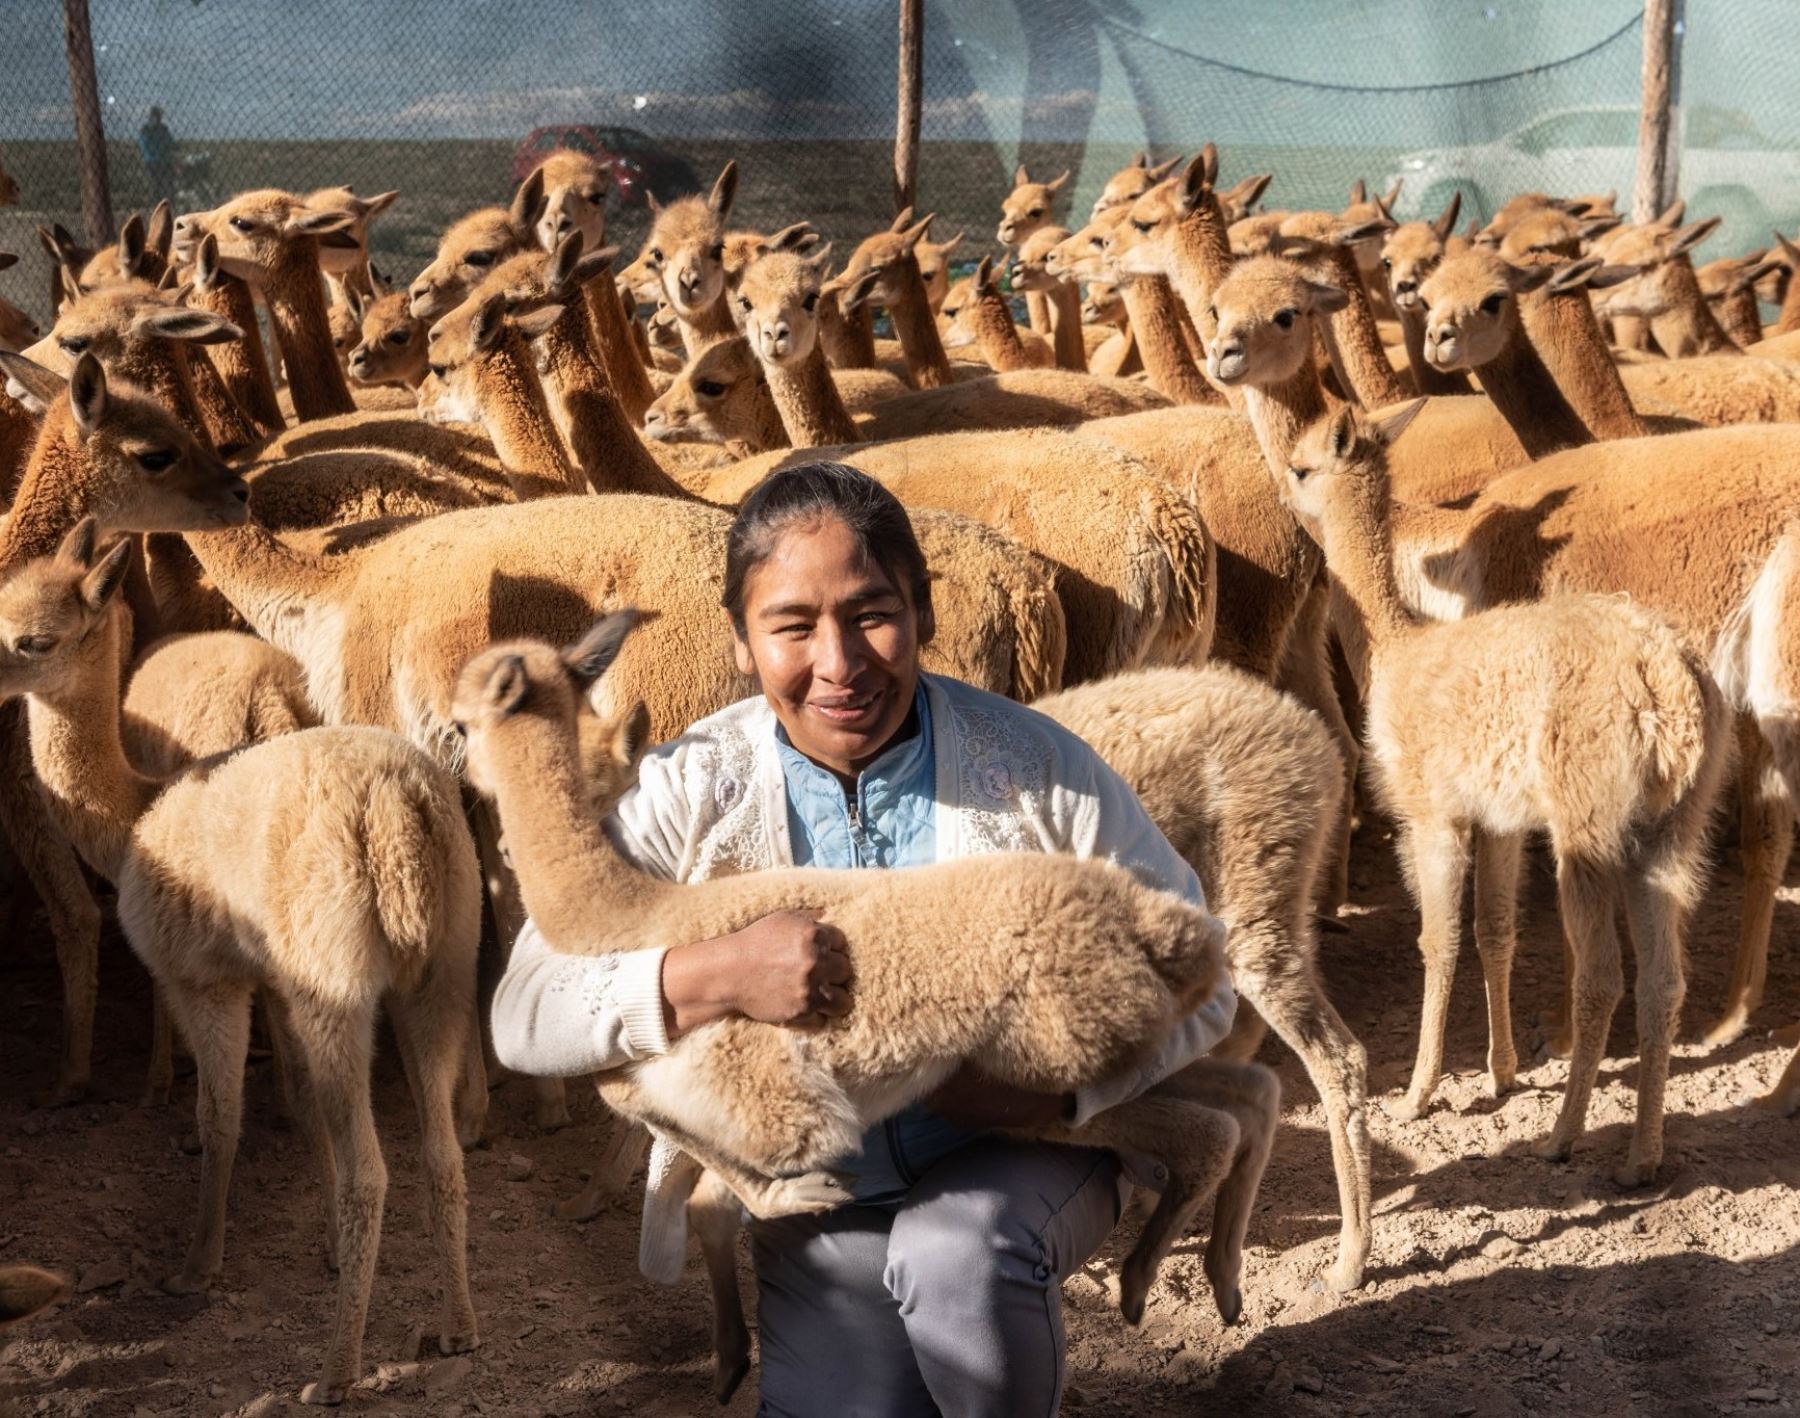 El Chaccu consiste en reunir a cientos de vicuñas para esquilar su fibra, considerada una de las más finas del mundo, para contribuir a su aprovechamiento sostenible y a la conservación de esta especie oriunda del Perú. ANDINA/Difusión